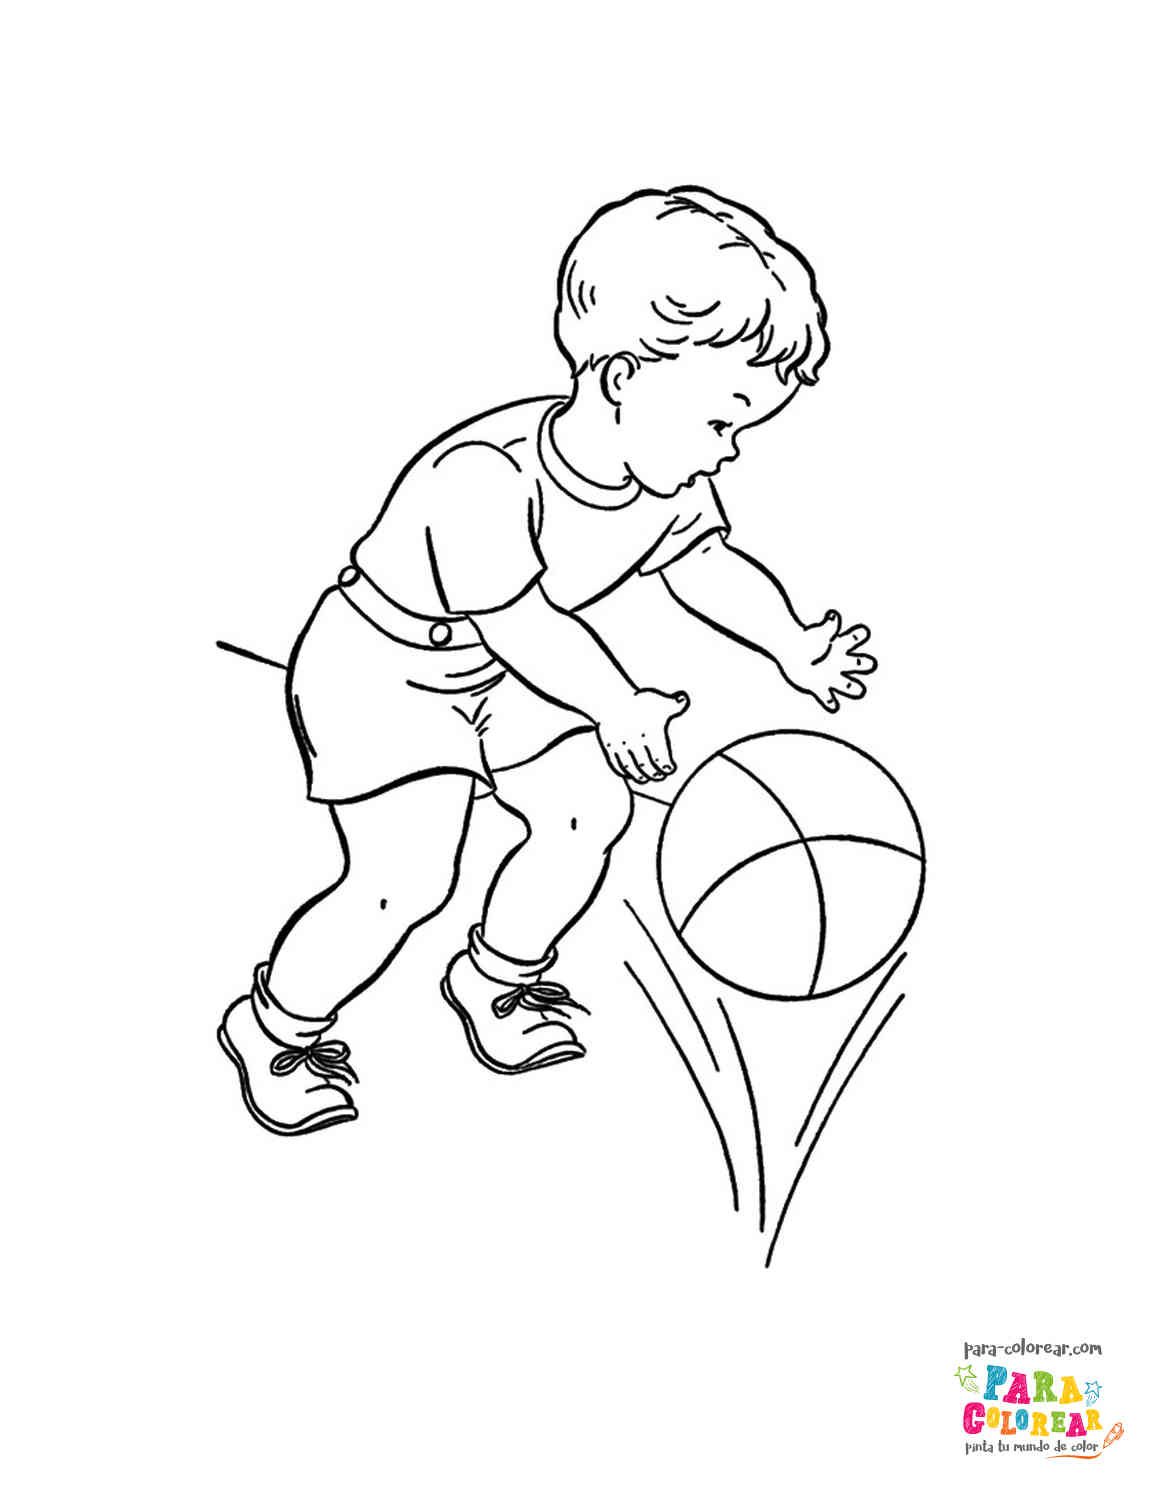 Dibujo de niño jugando al fútbol para colorear 